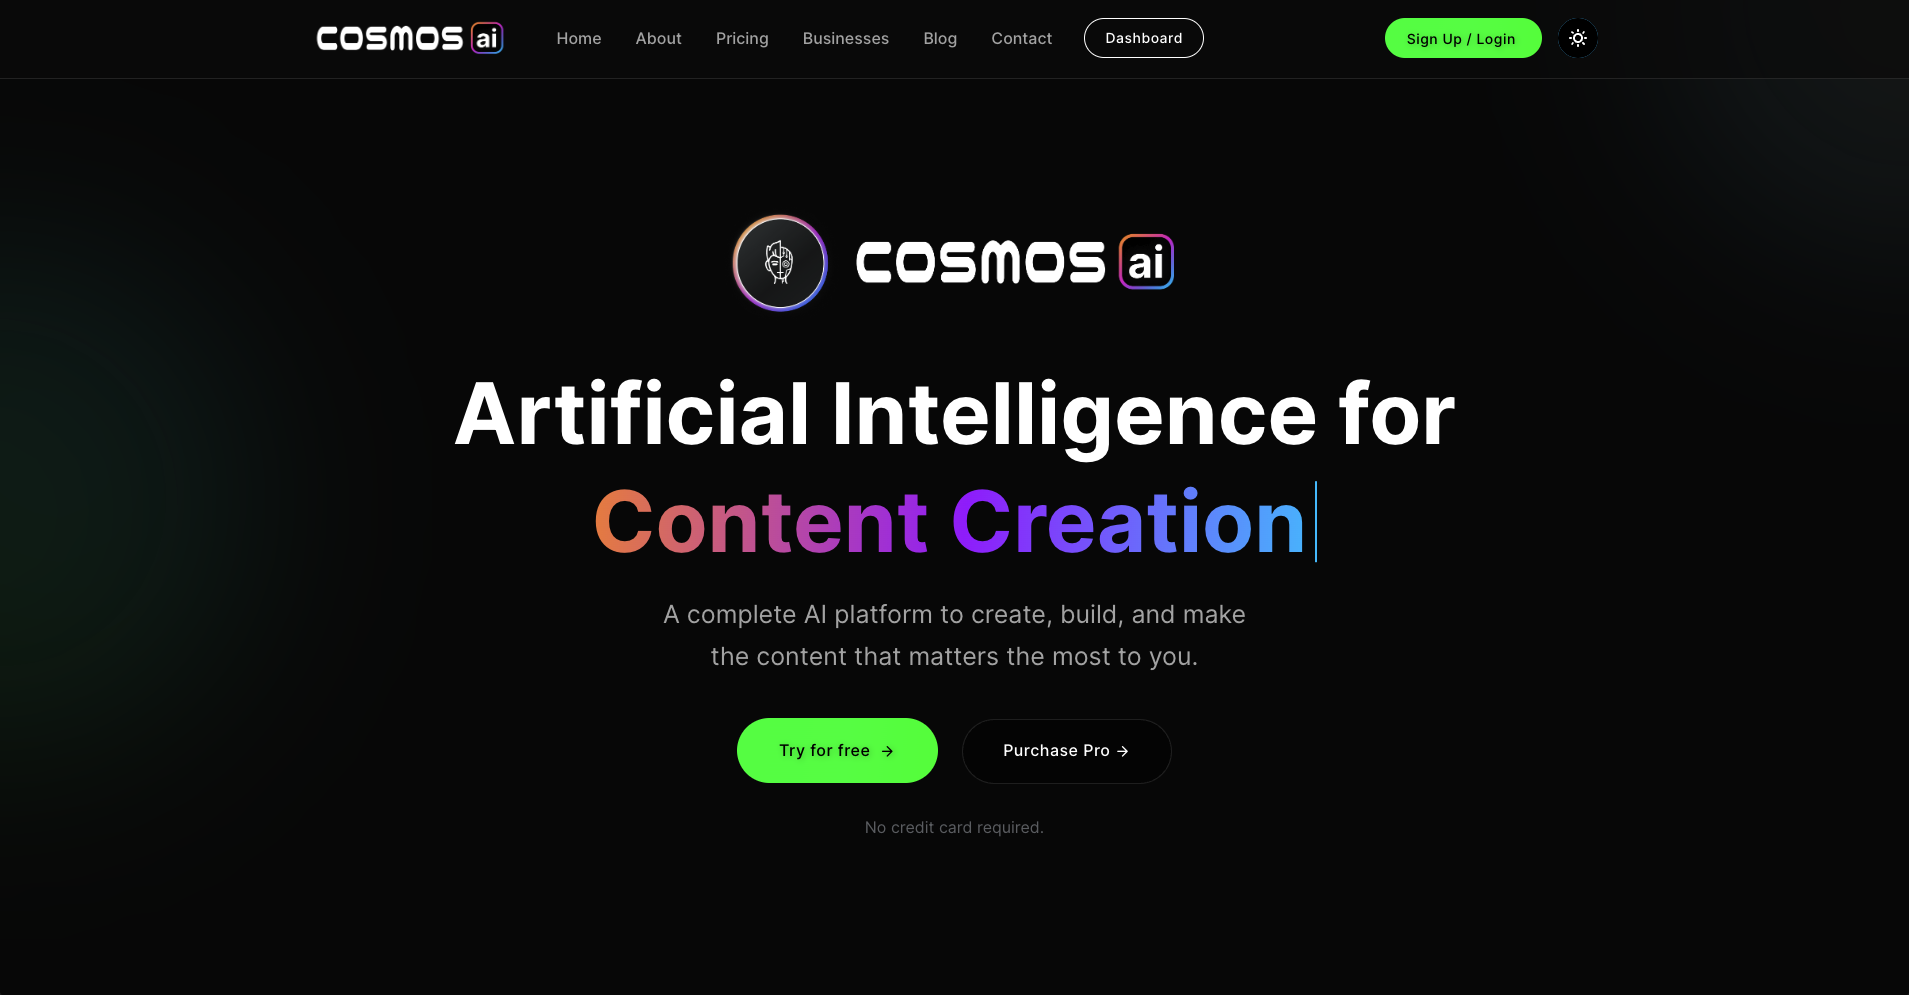 Cosmos AI